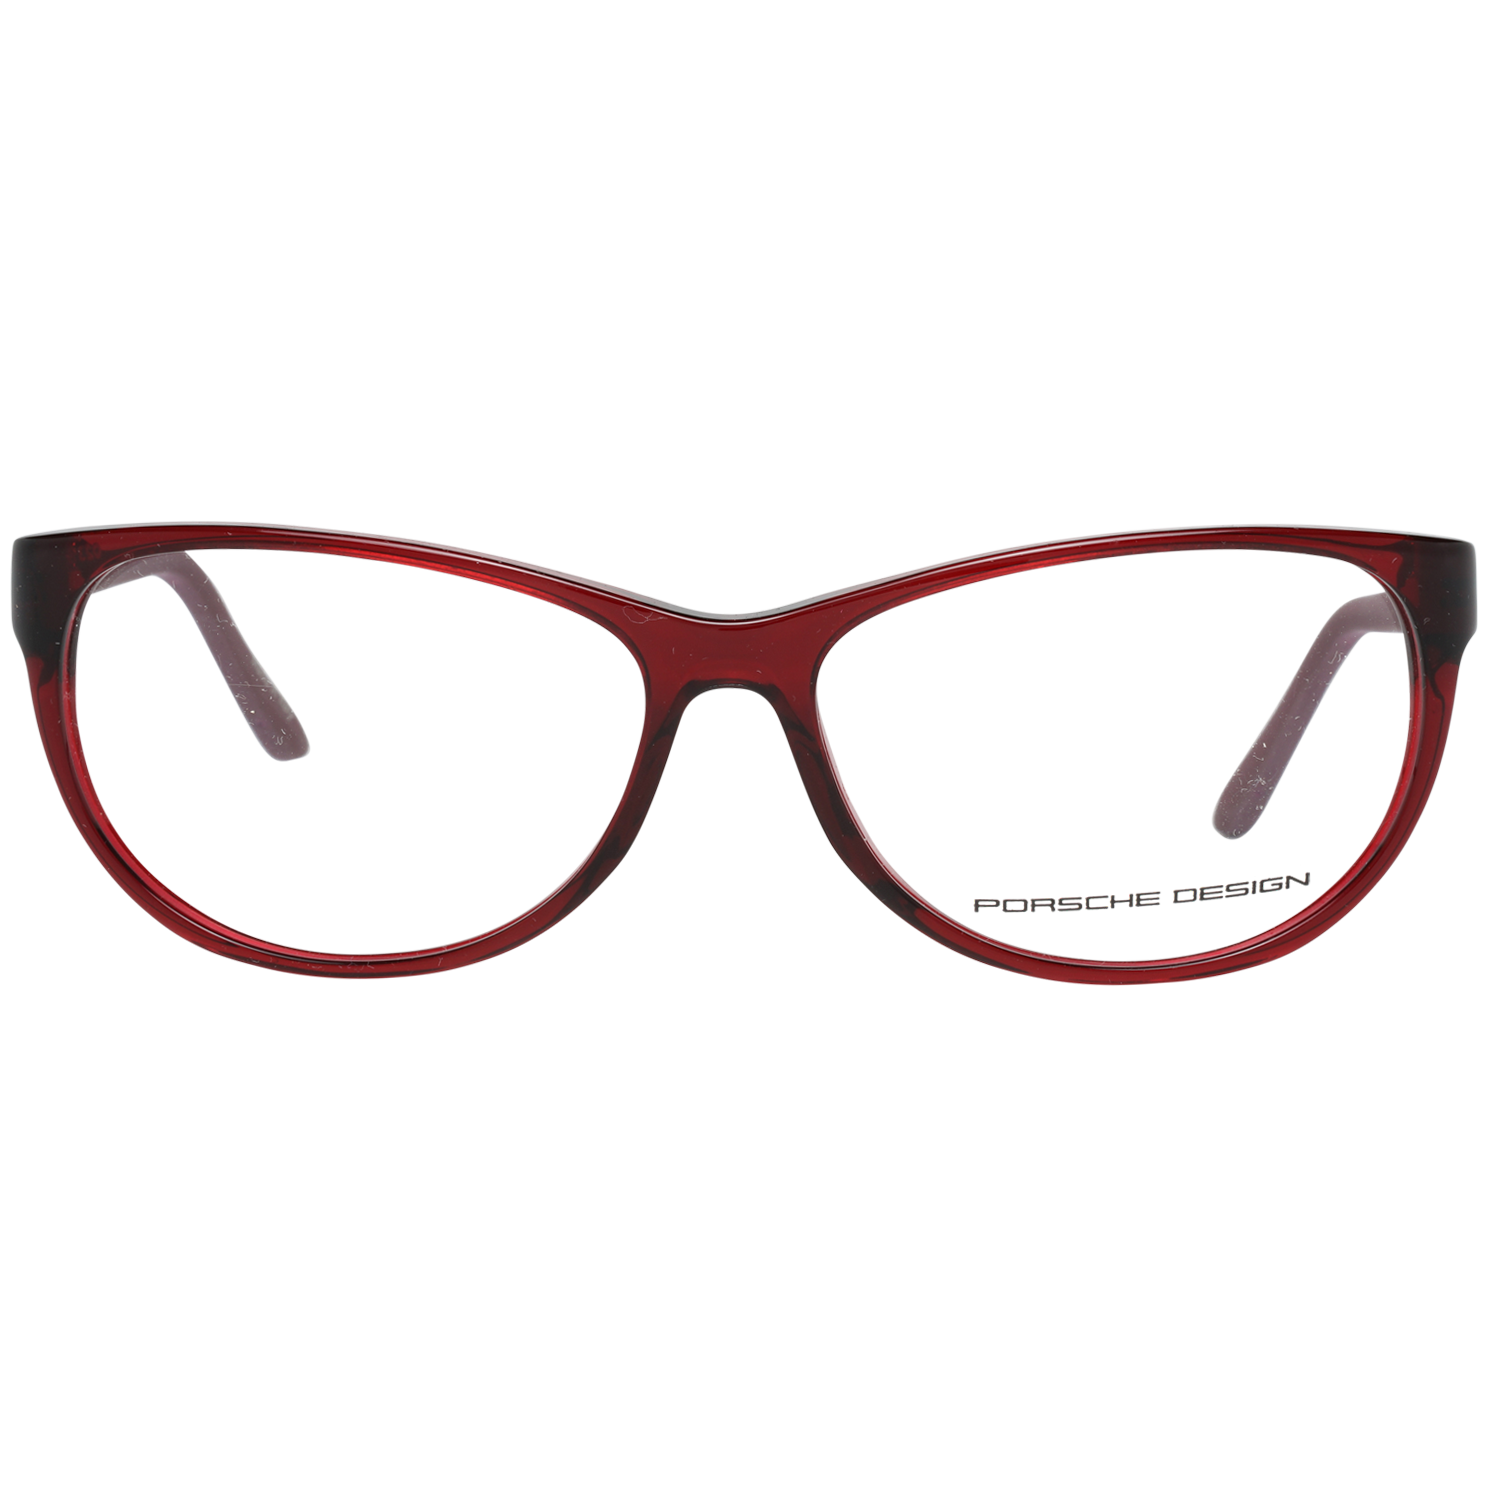 Porsche Design Women's Red Cat-Eye Glasses Optical Frame P8246 C 56